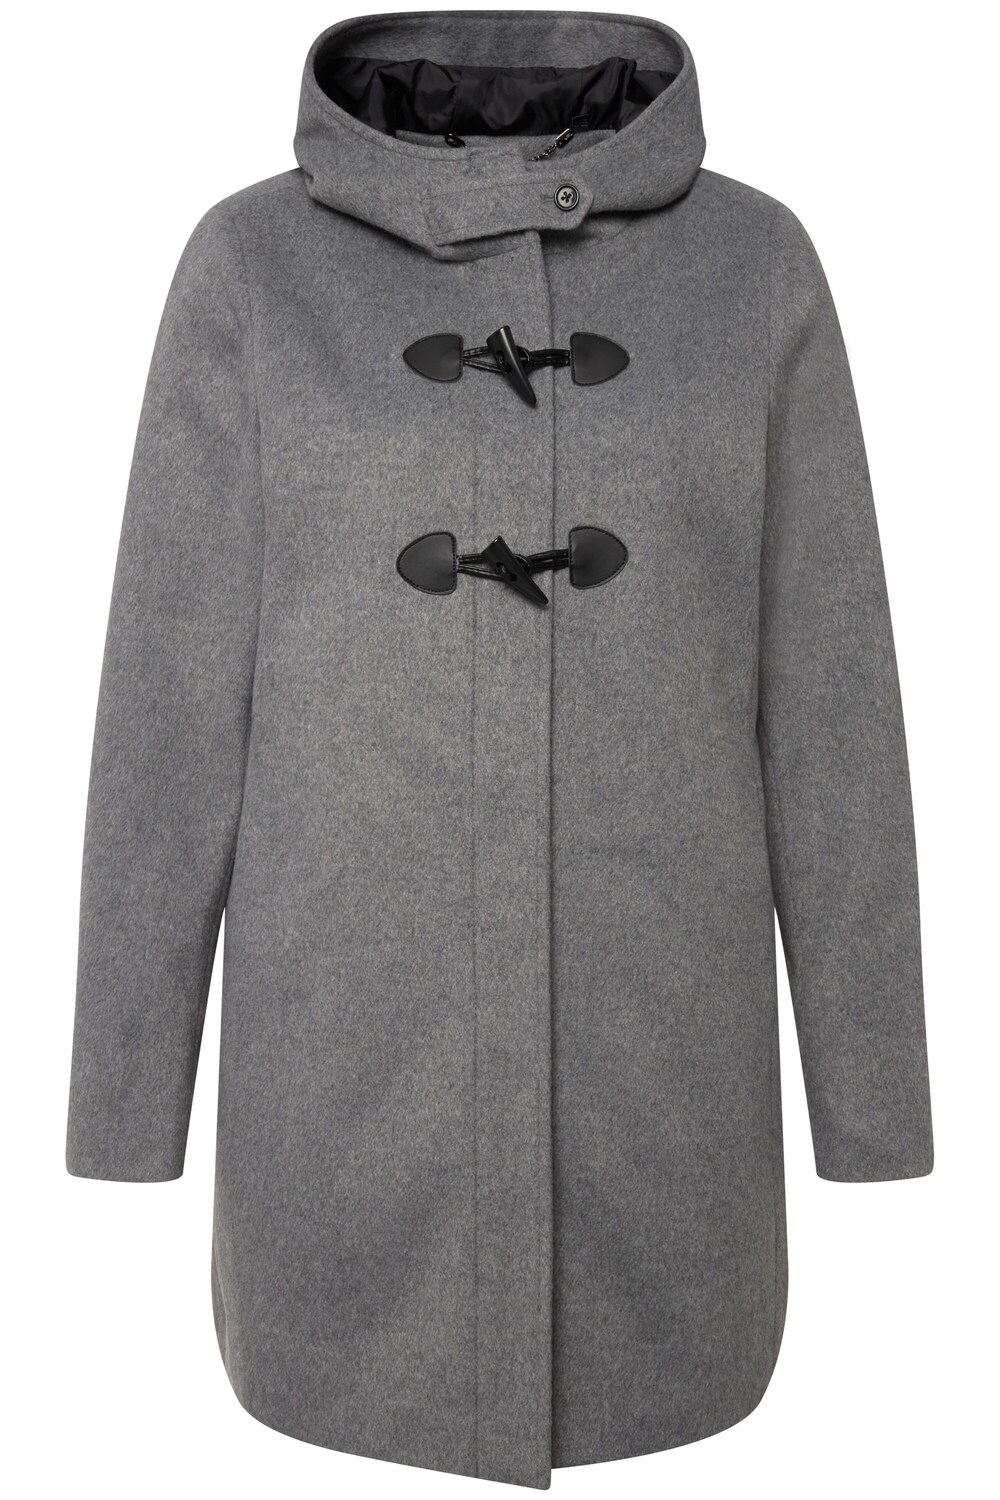 Межсезонное пальто Ulla Popken, серый межсезонное пальто ulla popken пестрый коричневый